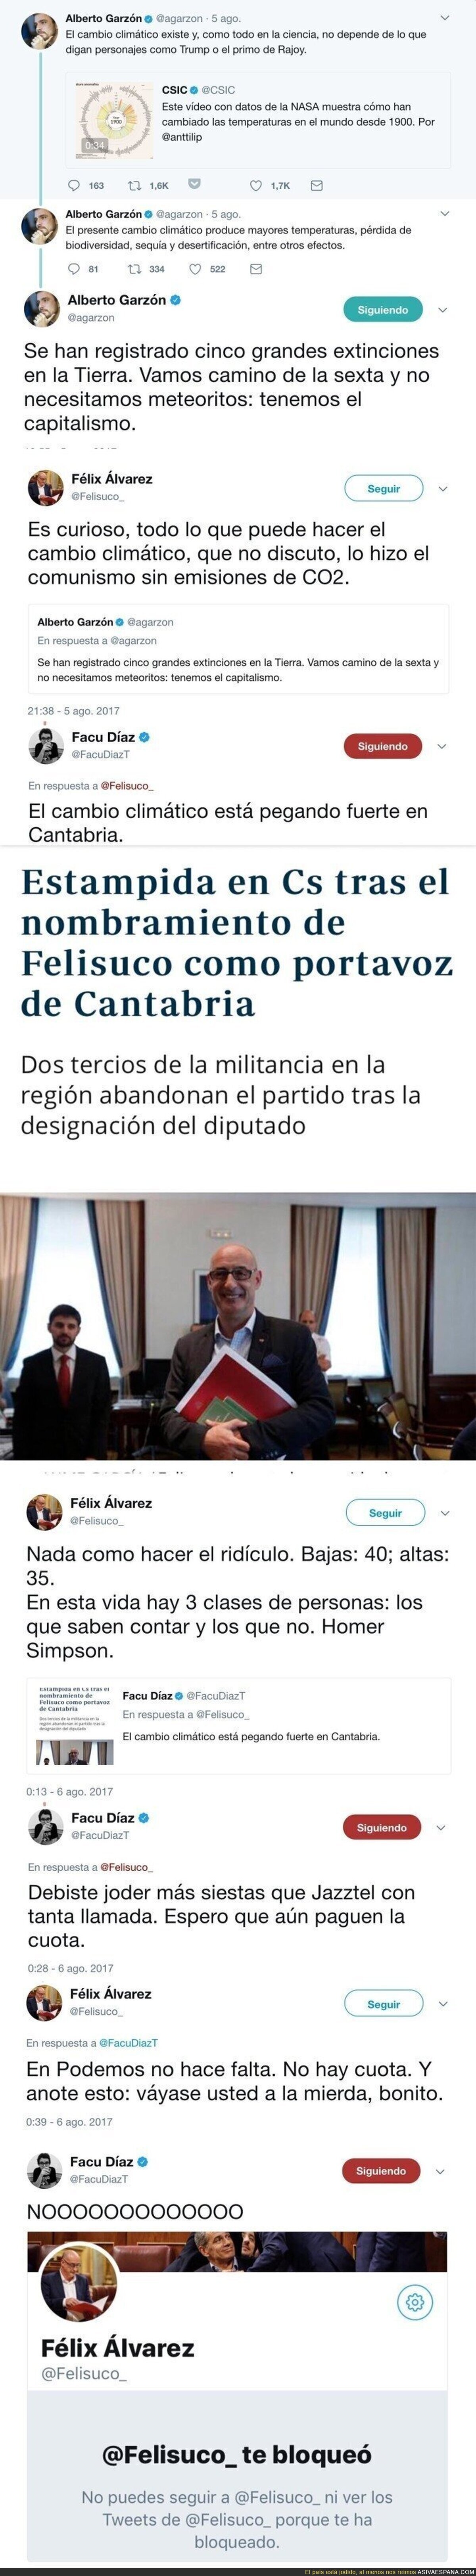 El brutal ZASCA de Facu Díaz a Felisuco que ha terminado en insulto y bloqueo